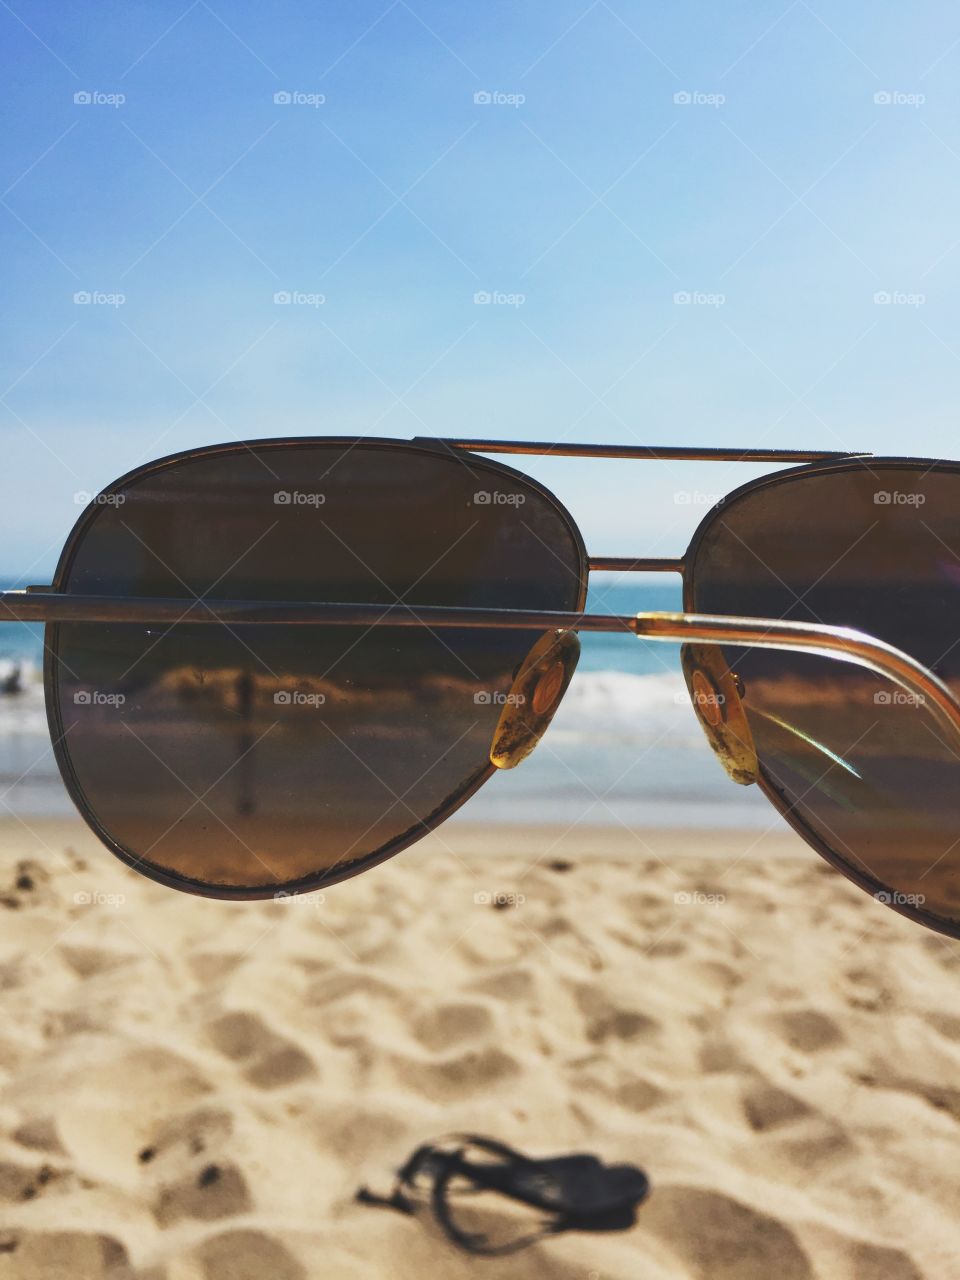 The beach seen through a pair of sunglasses 